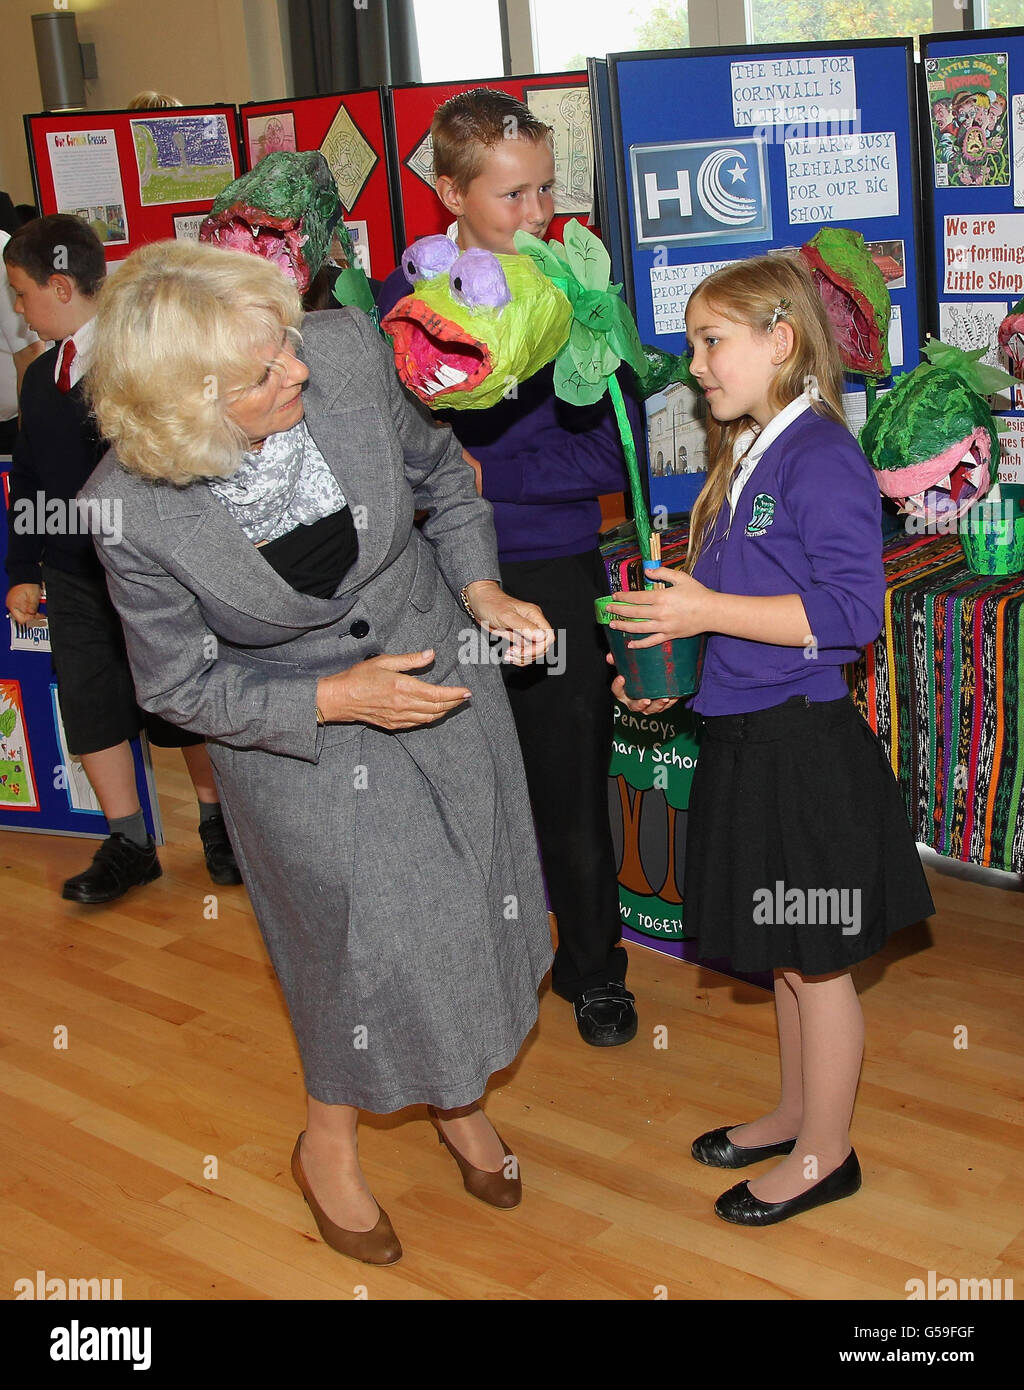 La duchessa della Cornovaglia incontra Rhyanan Atkinson, 11, (a destra) e Joshua Gilbert, 11, (dietro il centro) dalla scuola primaria di Pencoys mentre le mostrano il loro progetto 'piccolo negozio di Orrors' a Truro, Inghilterra. Foto Stock